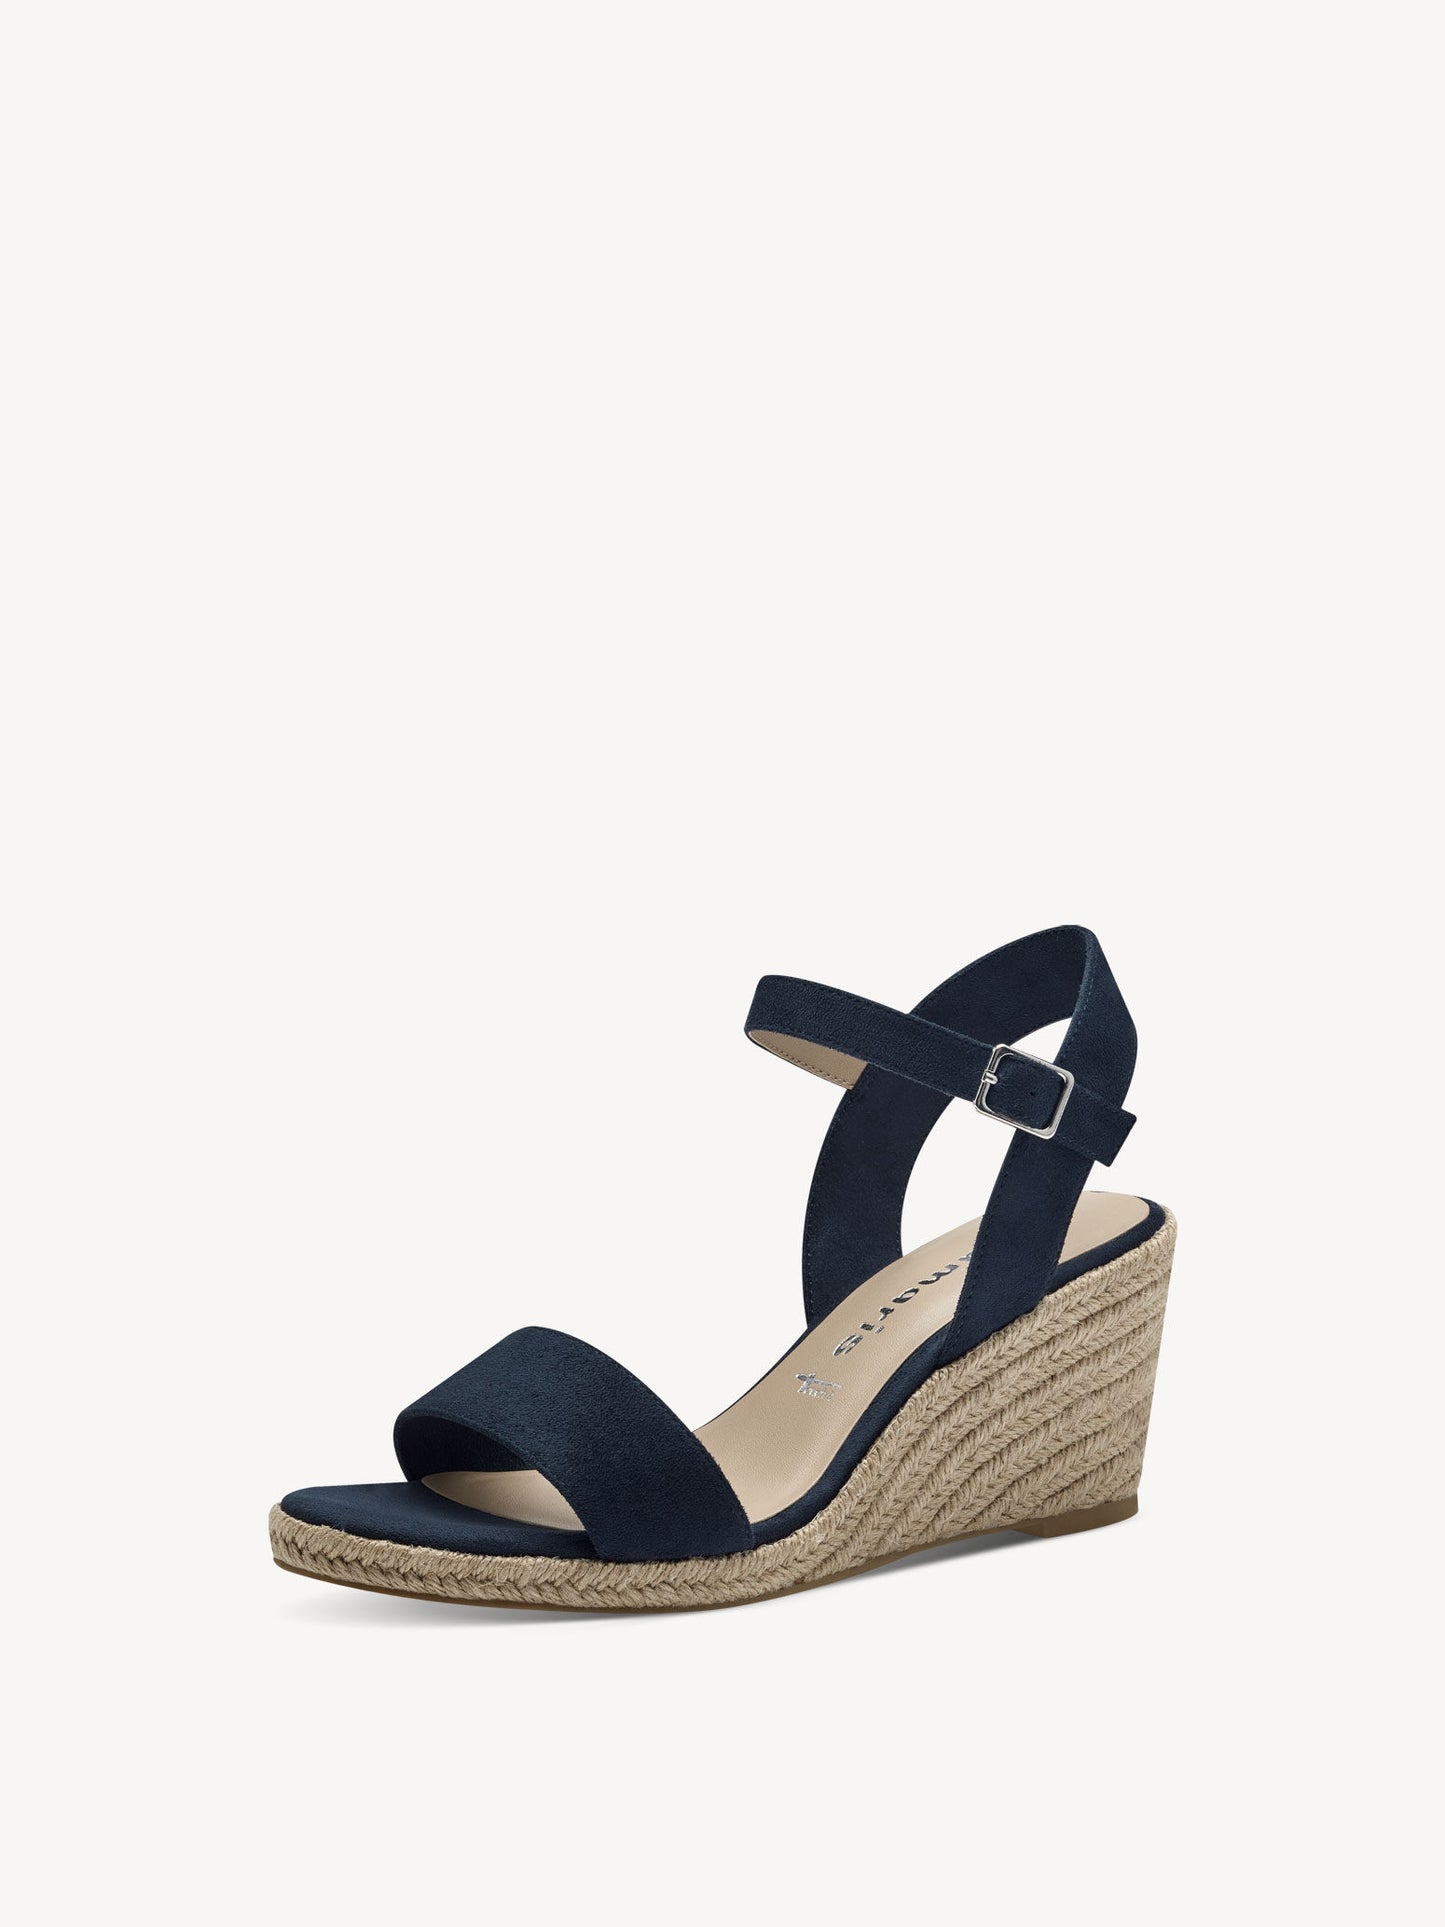 Tamaris Women's 1-28300-42 Wedge Heel Sandals Navy Blue